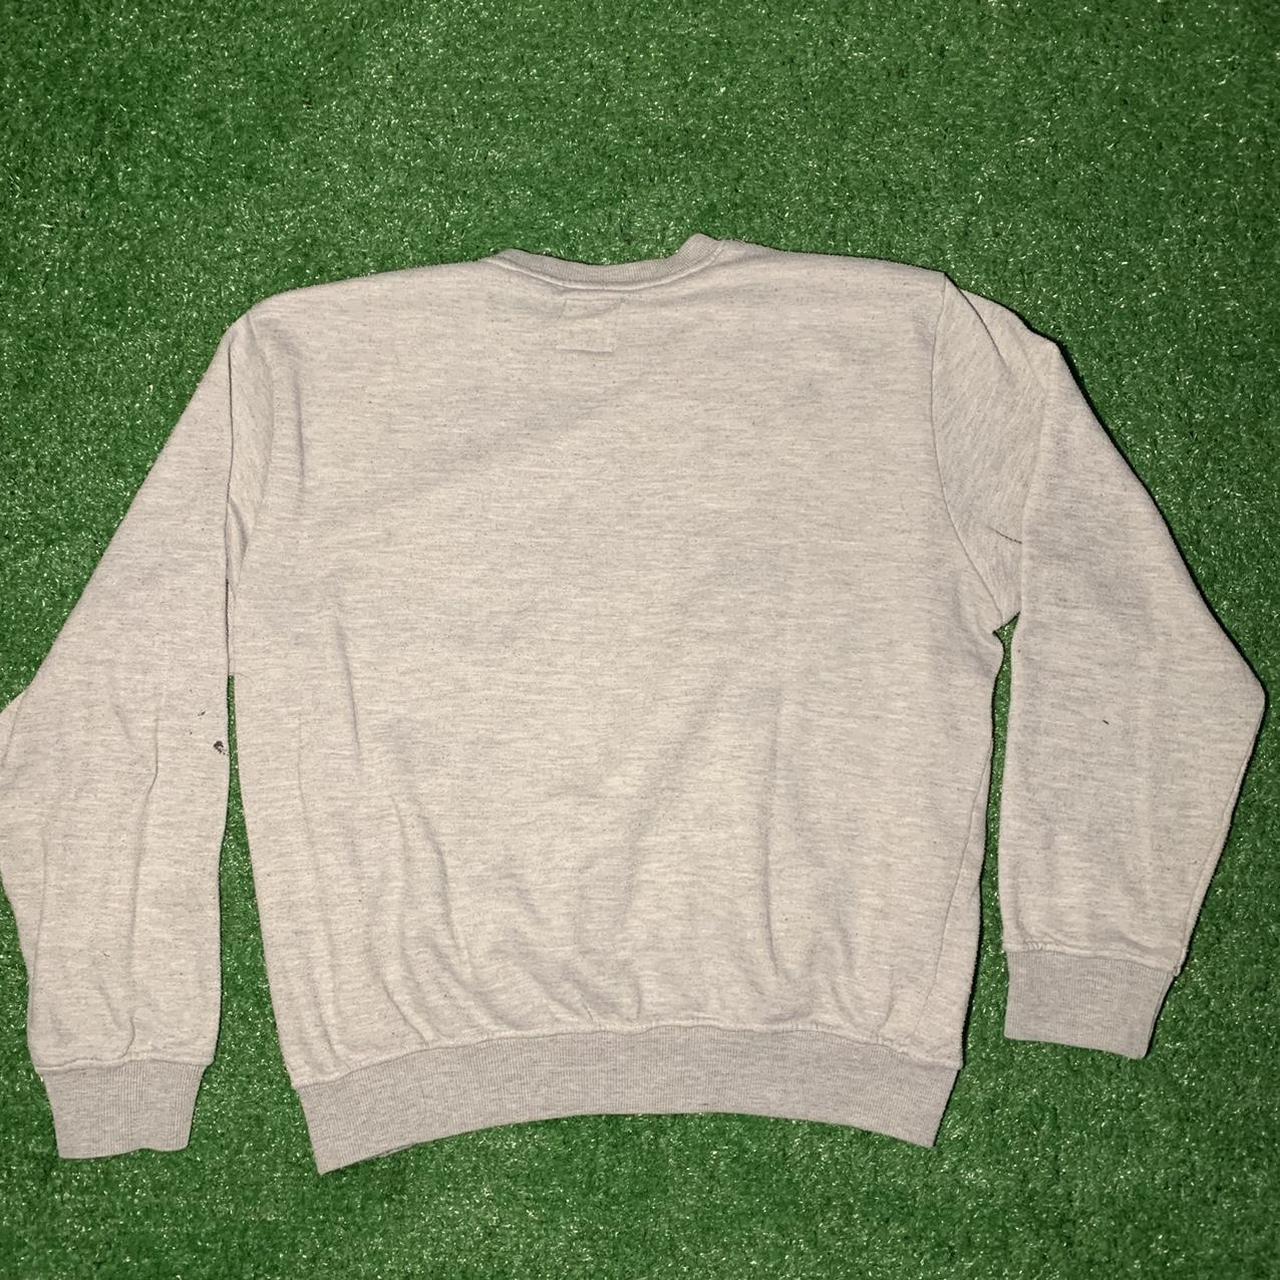 Gold Toe Men's Grey Sweatshirt (2)